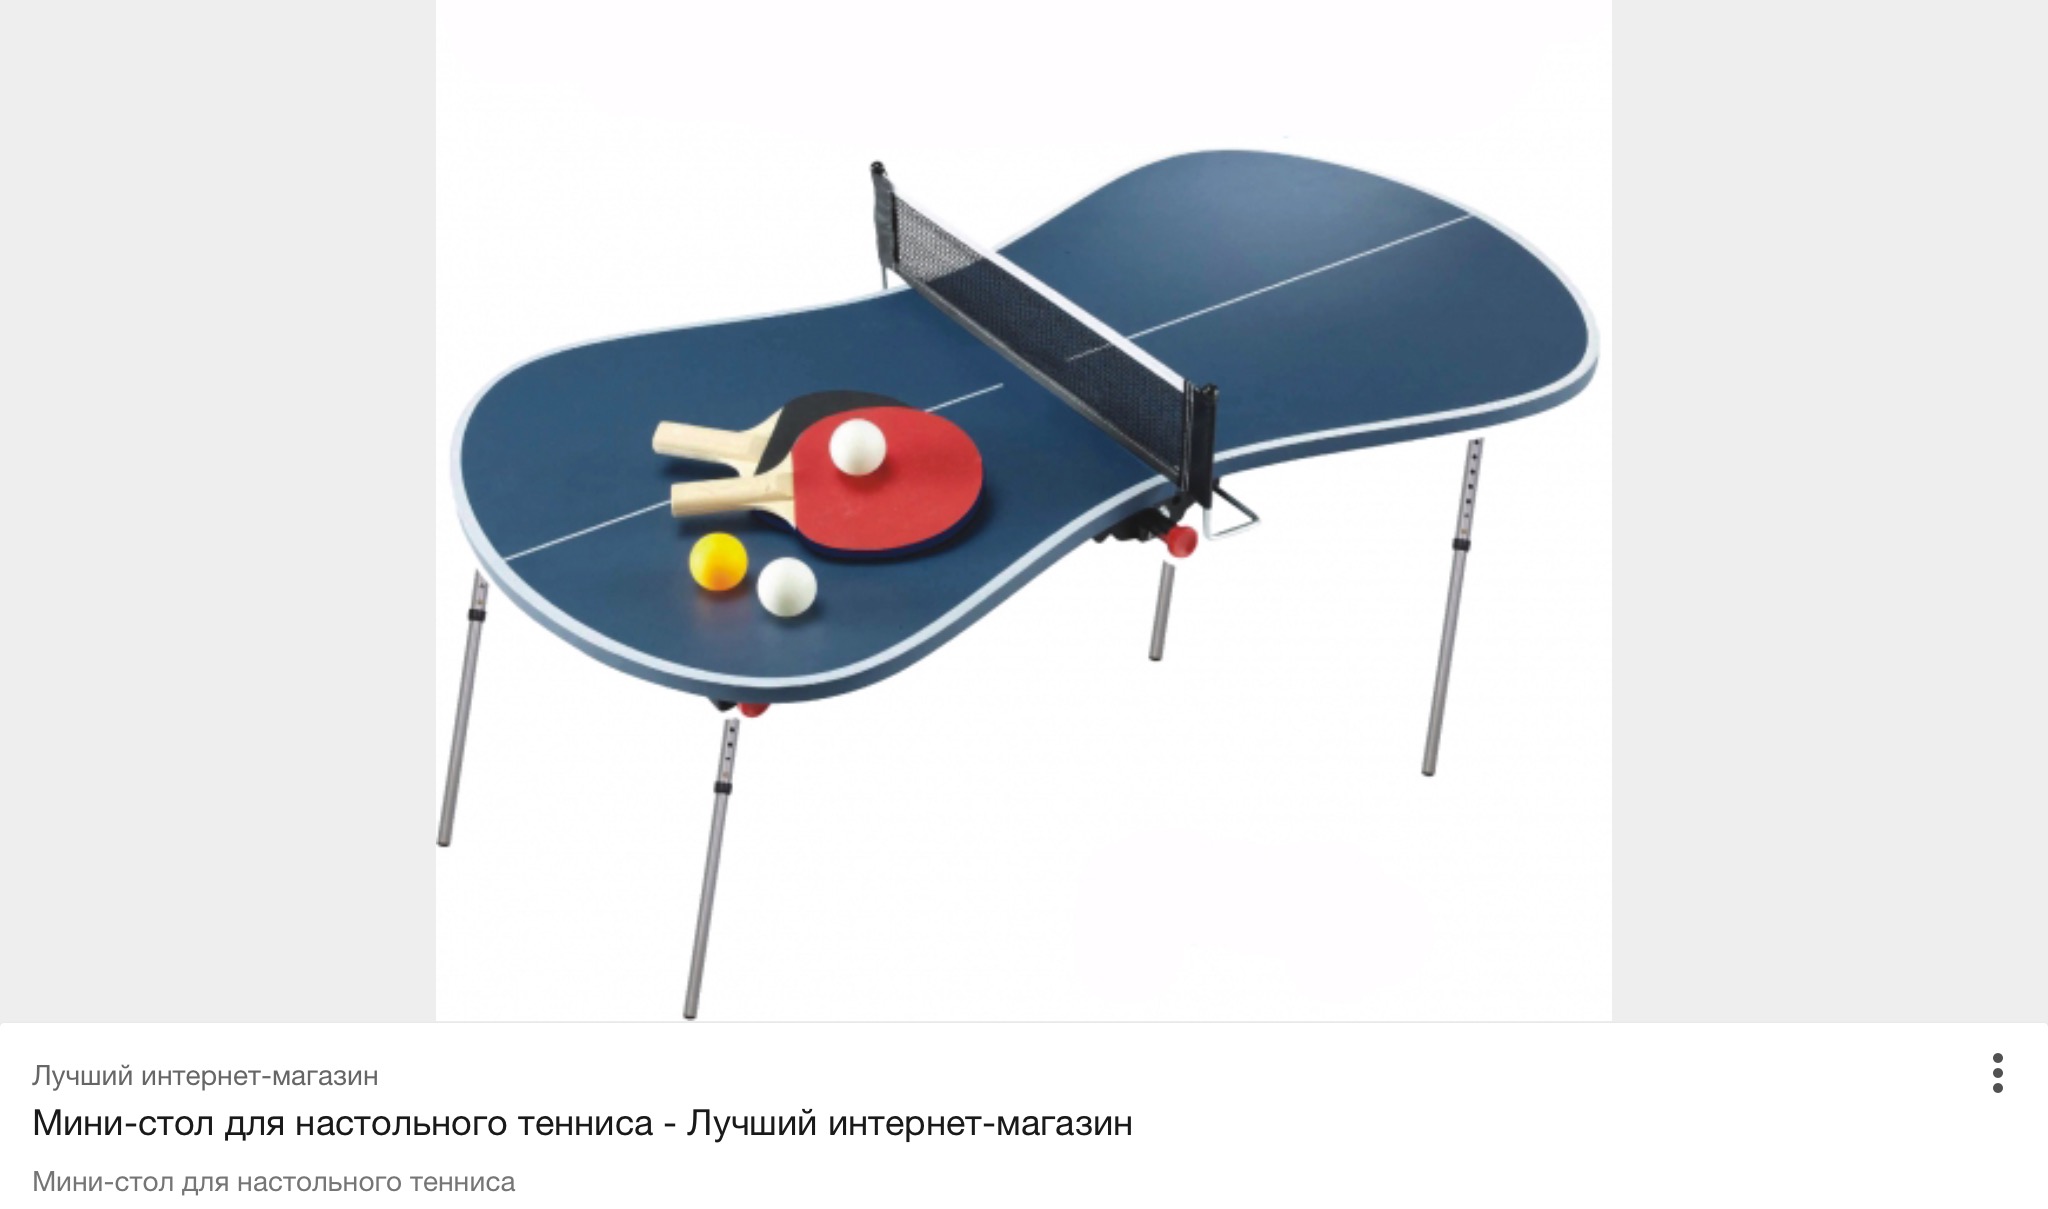 мини теннисный стол для детей